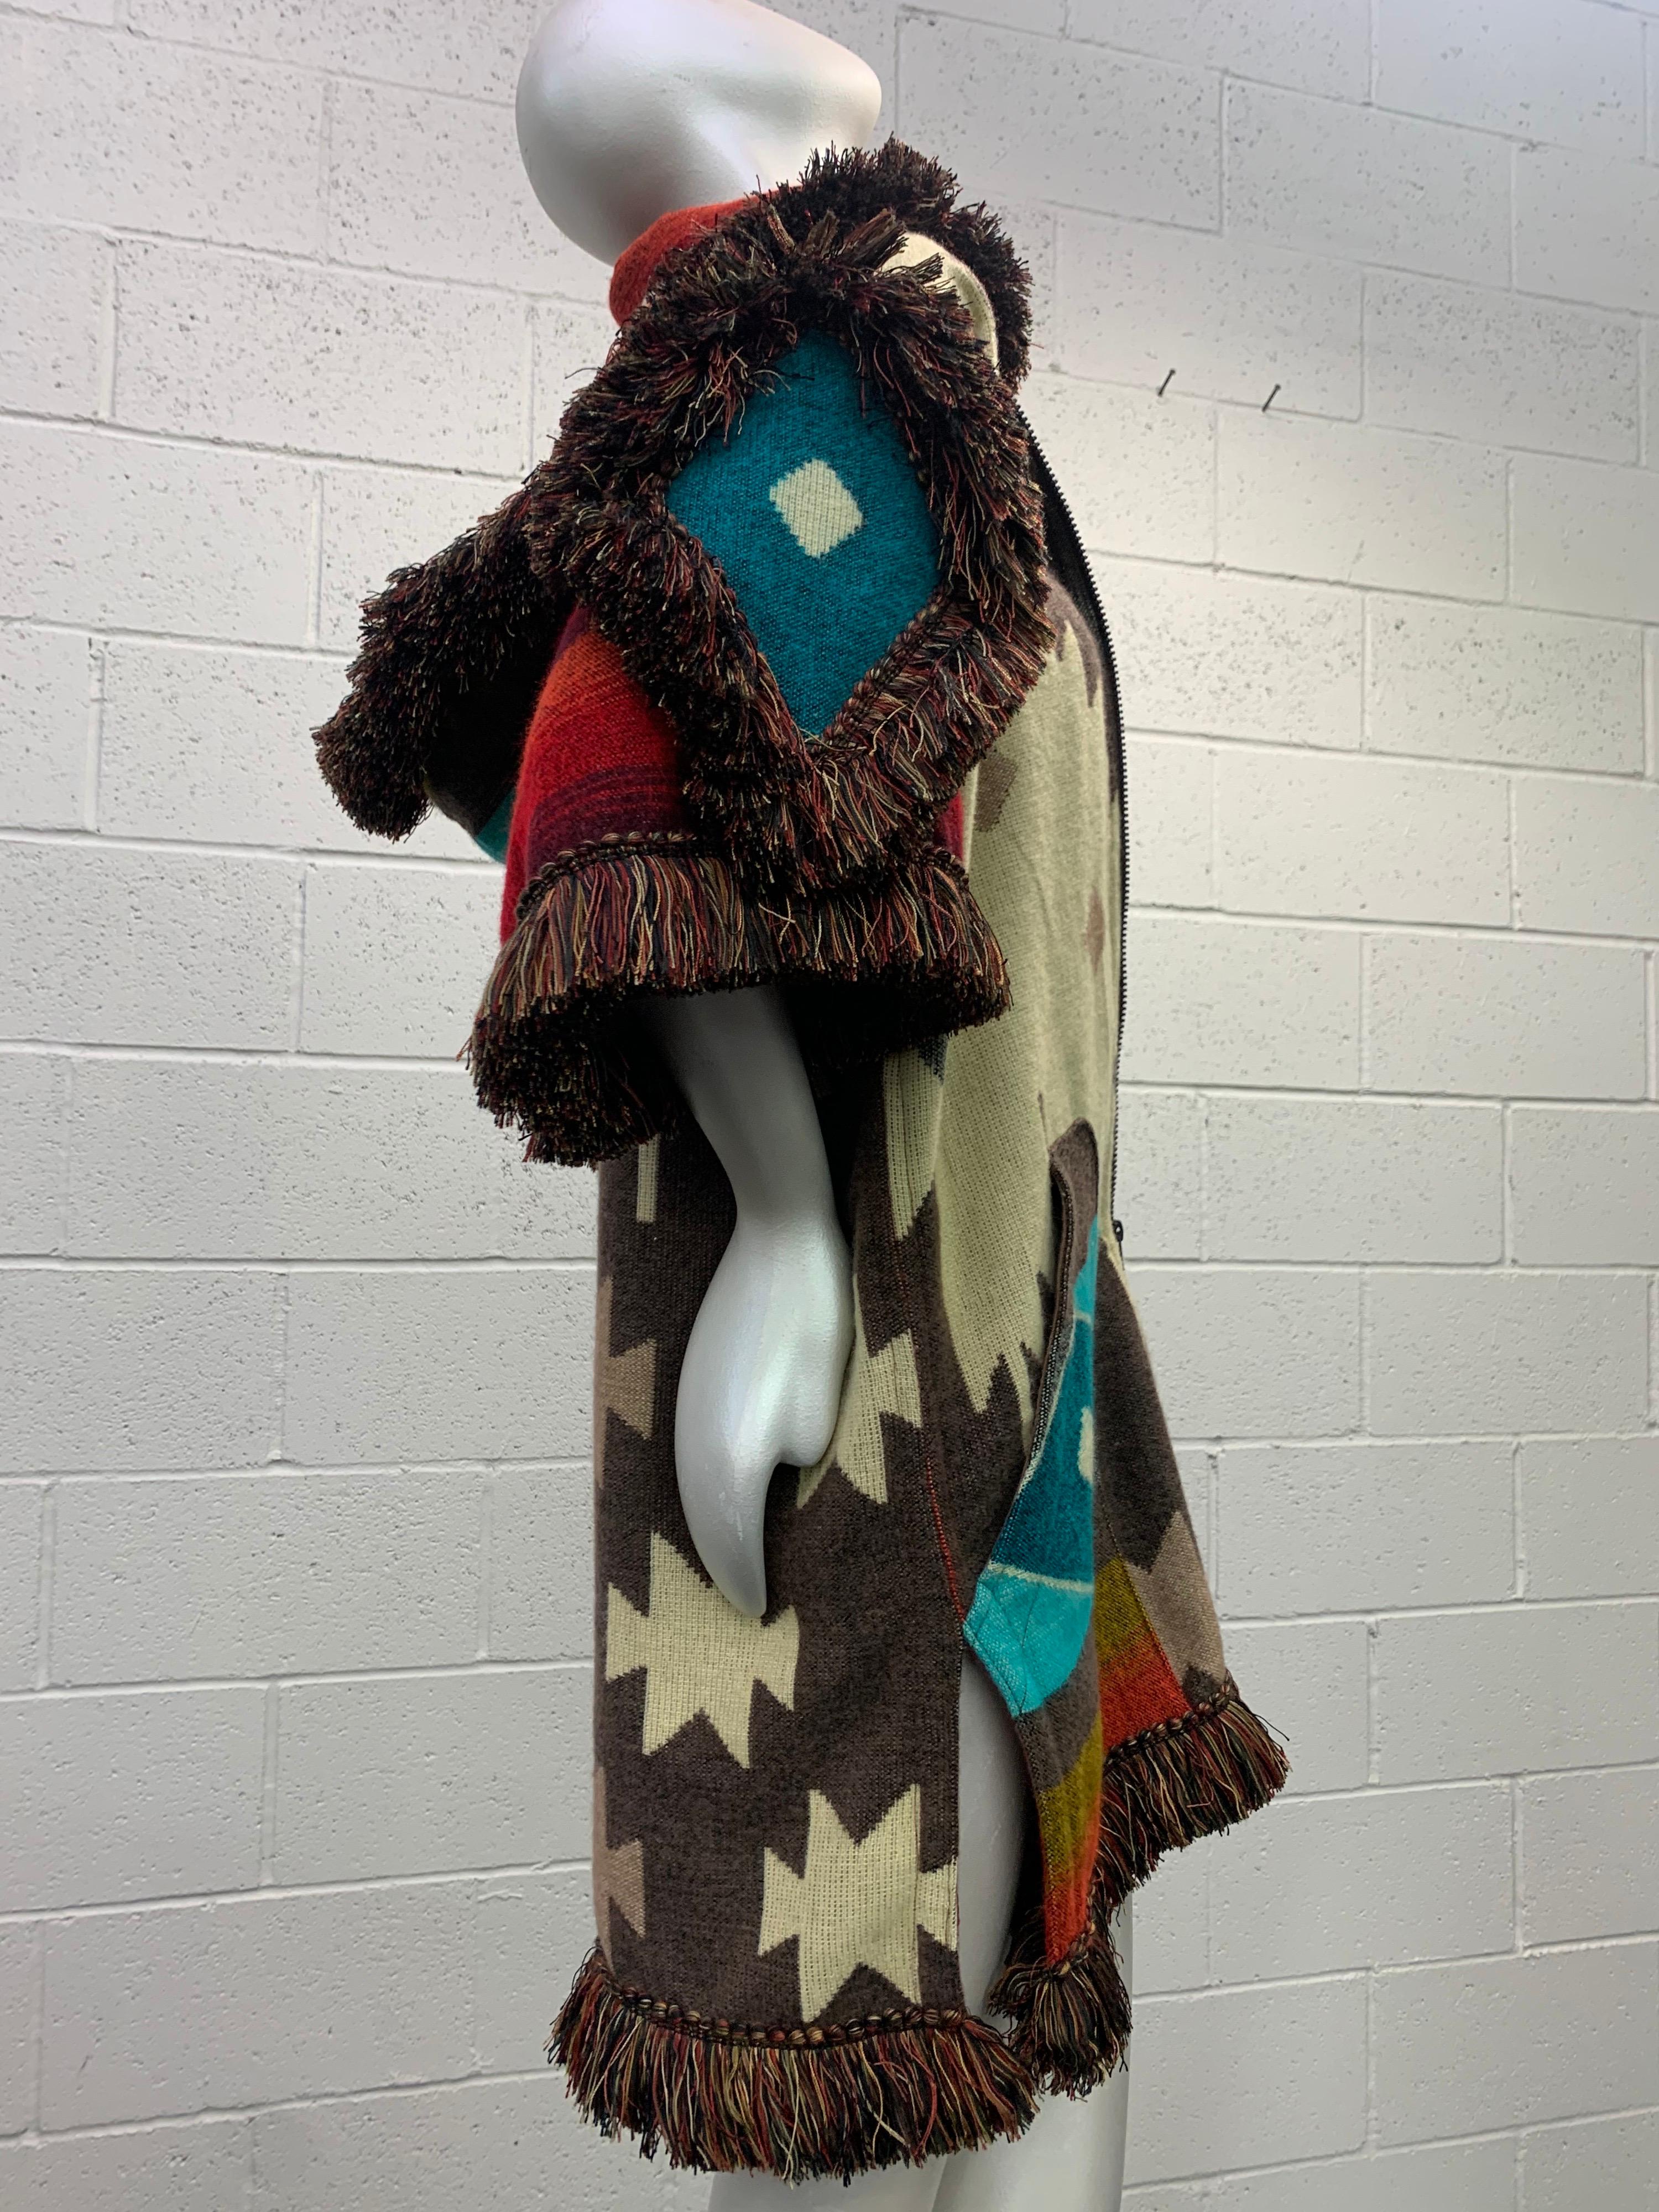 De notre atelier Torso Creations vient cette couverture en laine tissée ultra-douce, fabriquée en Équateur, conçue dans une capuche à double fermeture éclair unisexe.  avec des poches et des franges en rayonne ombreuse.

Le motif audacieux du design